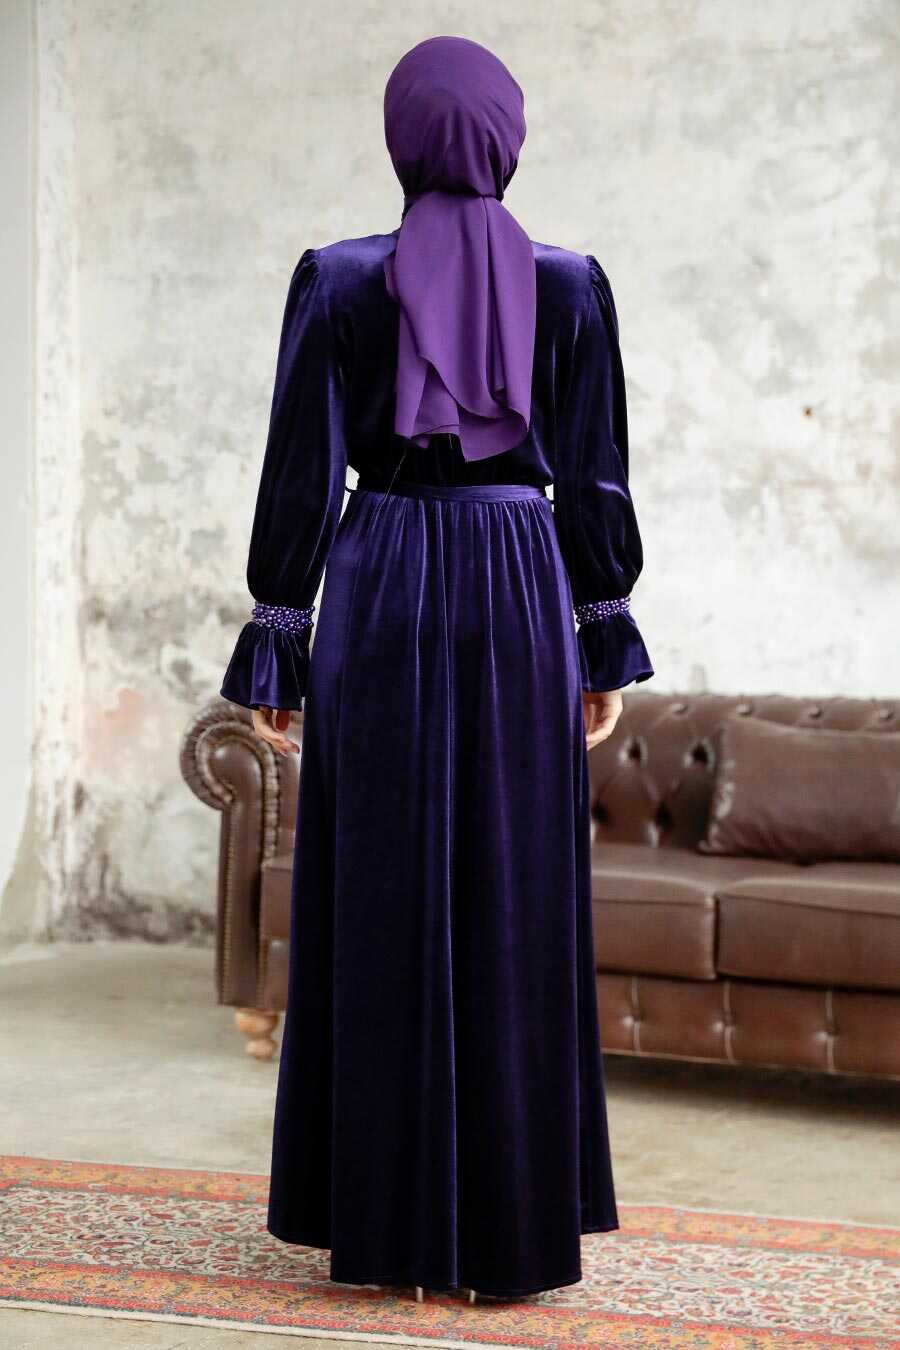 Neva Style - Purple Velvet Long Dress for Muslim Ladies 37291MOR